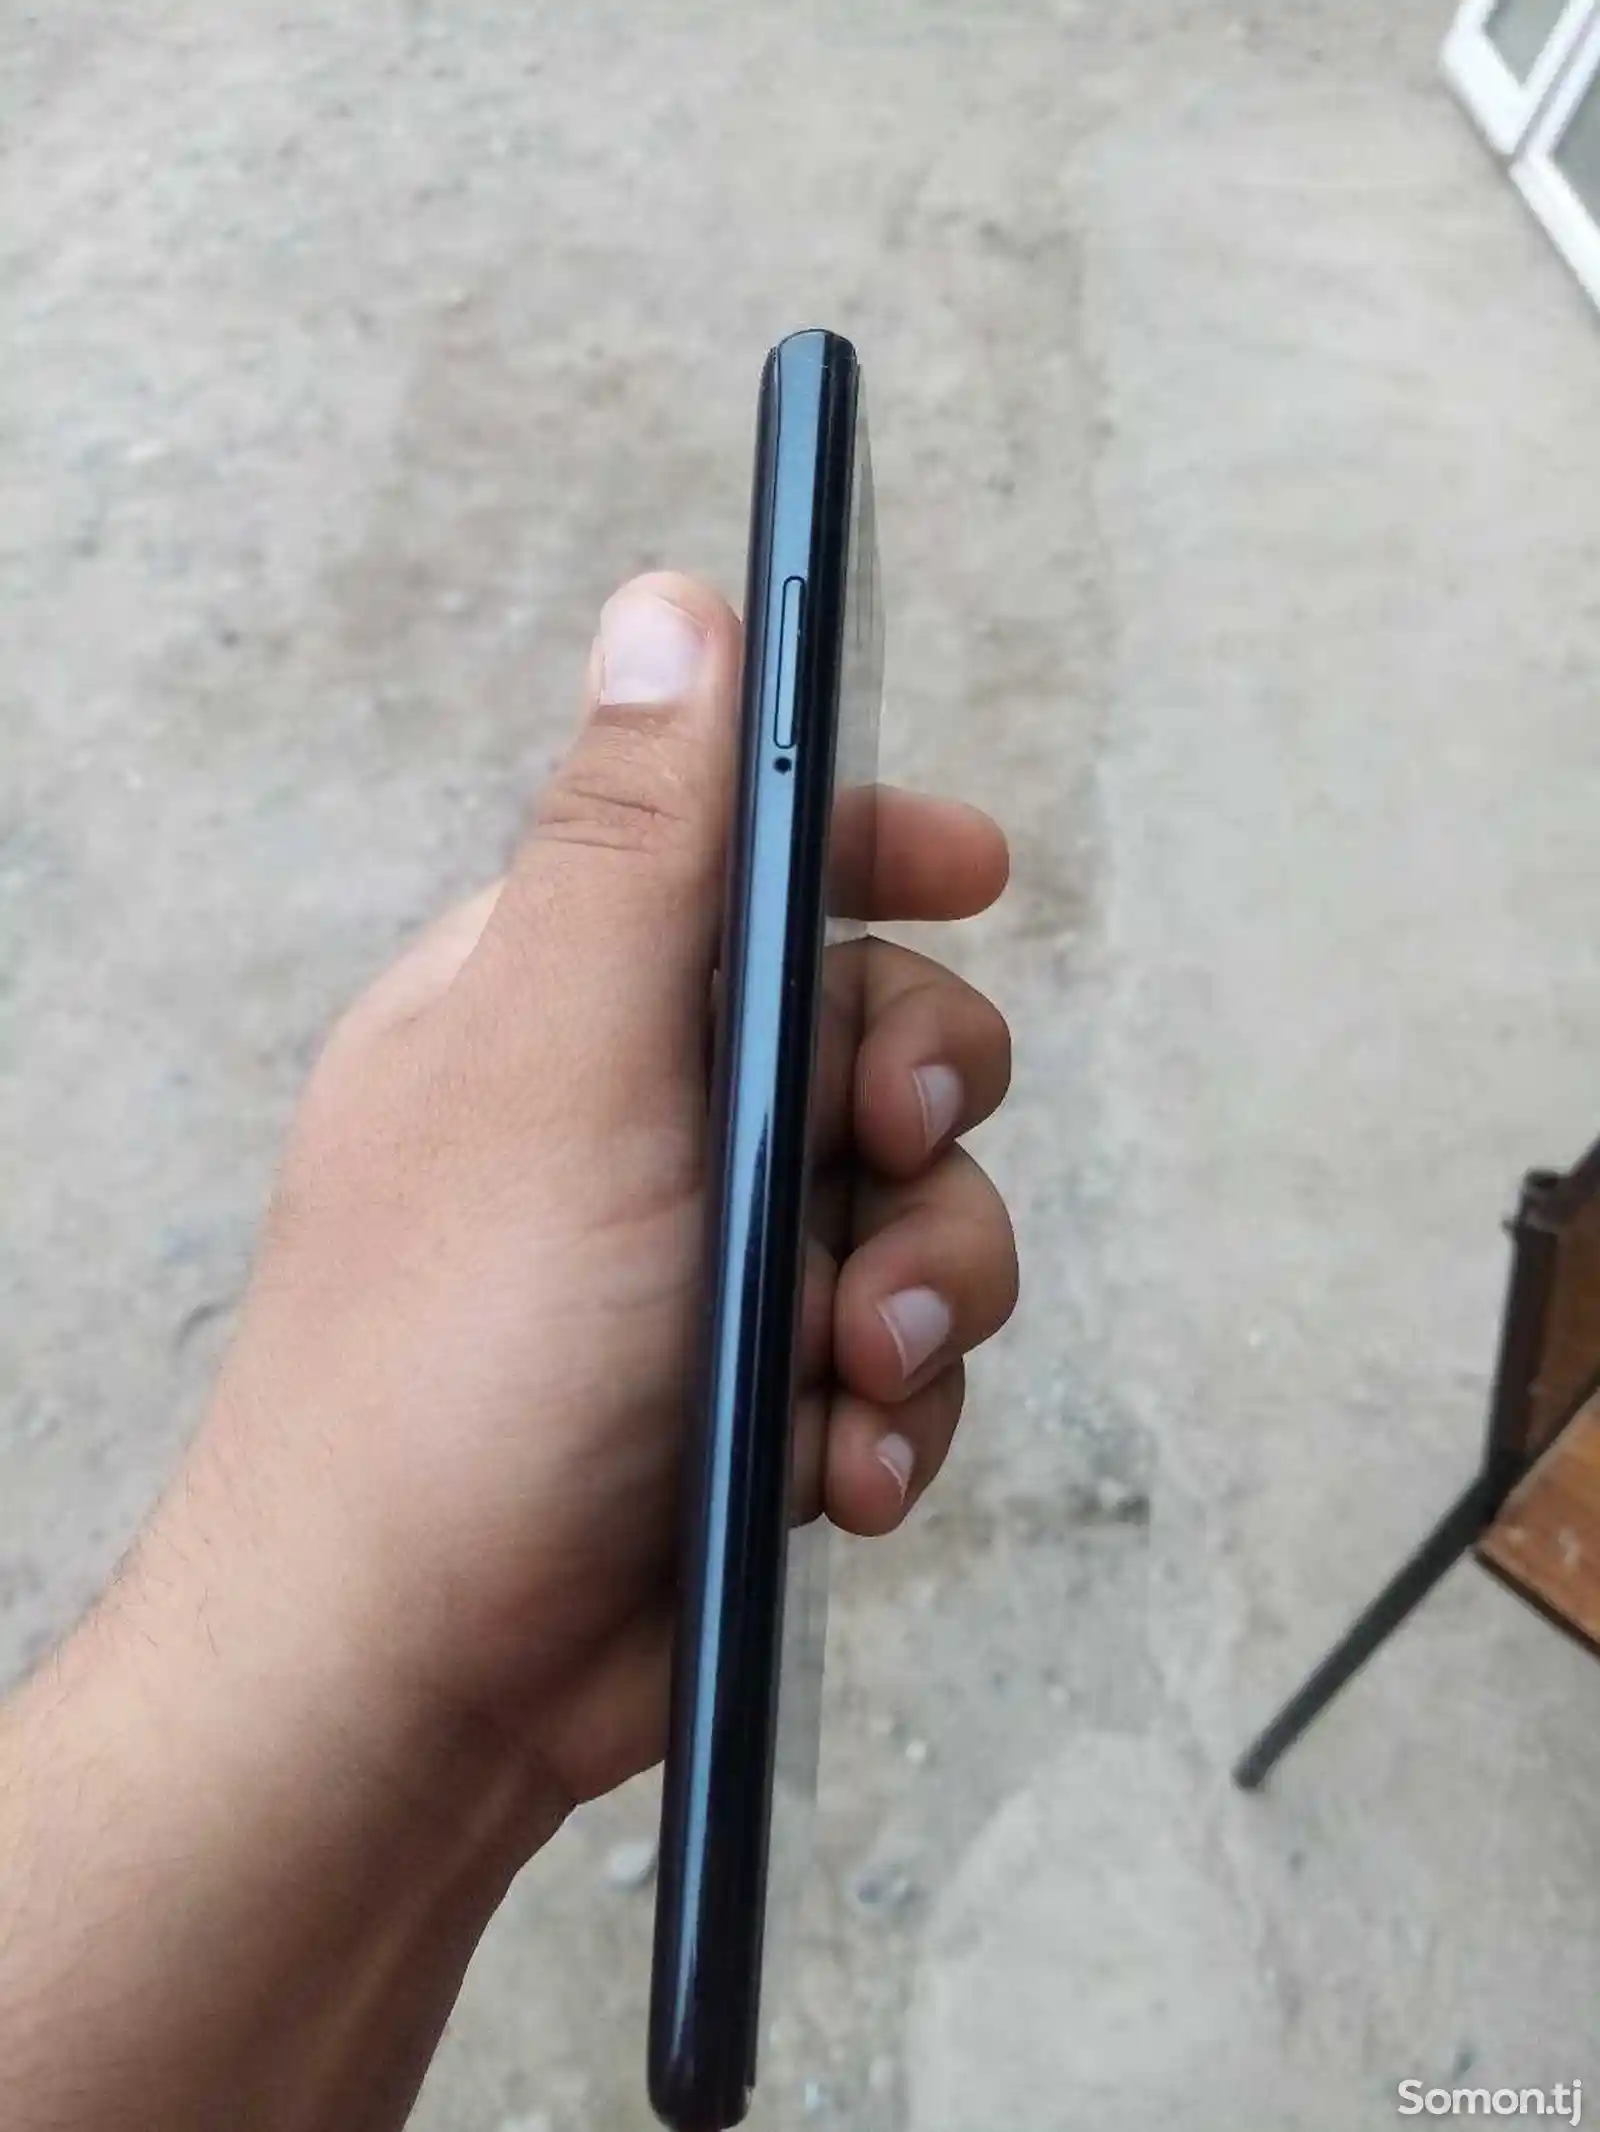 Телефон Xiaomi-5